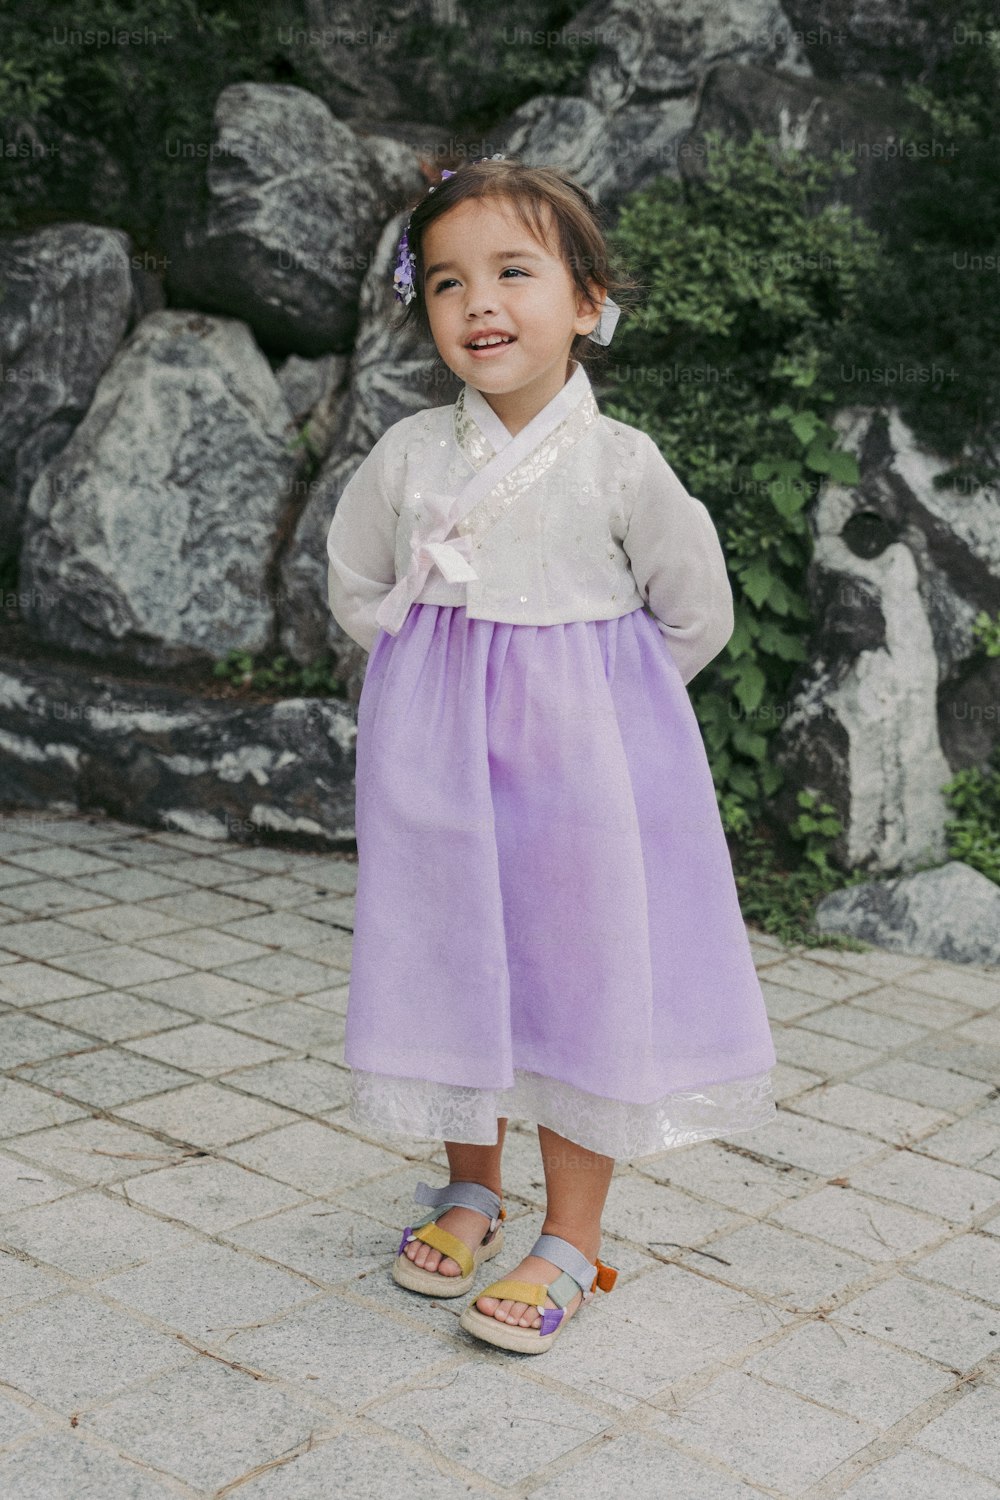 Una niña con un vestido púrpura parada frente a unas rocas